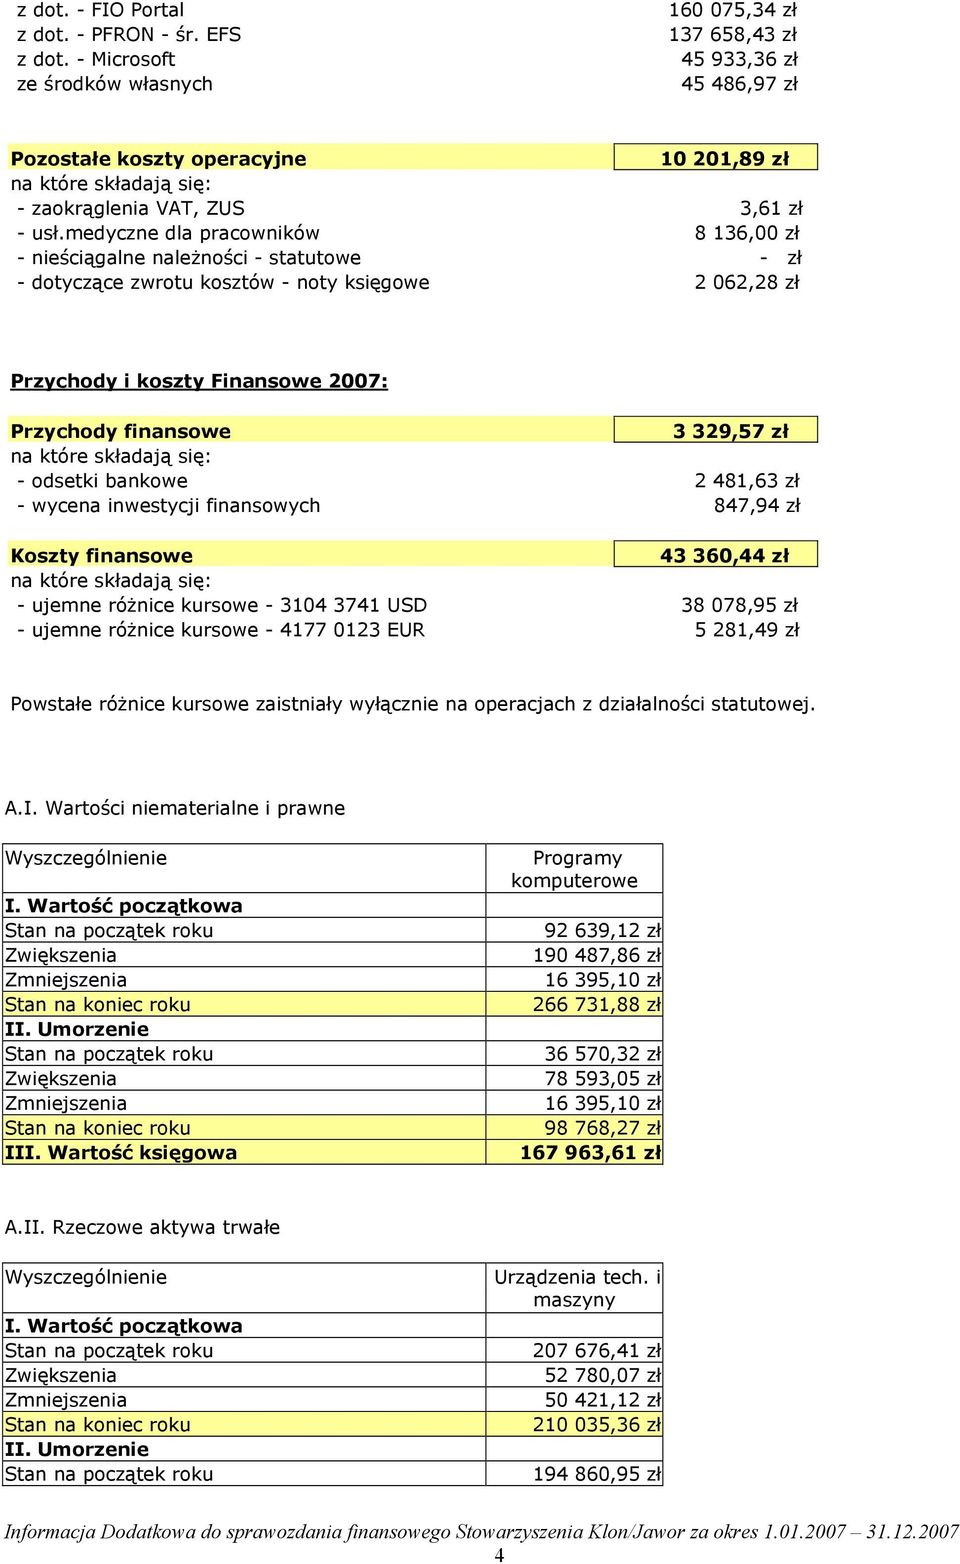 medyczne dla pracowników 8 136,00 zł - nieściągalne należności - statutowe - zł - dotyczące zwrotu kosztów - noty księgowe 2 062,28 zł Przychody i koszty Finansowe 2007: Przychody finansowe 3 329,57